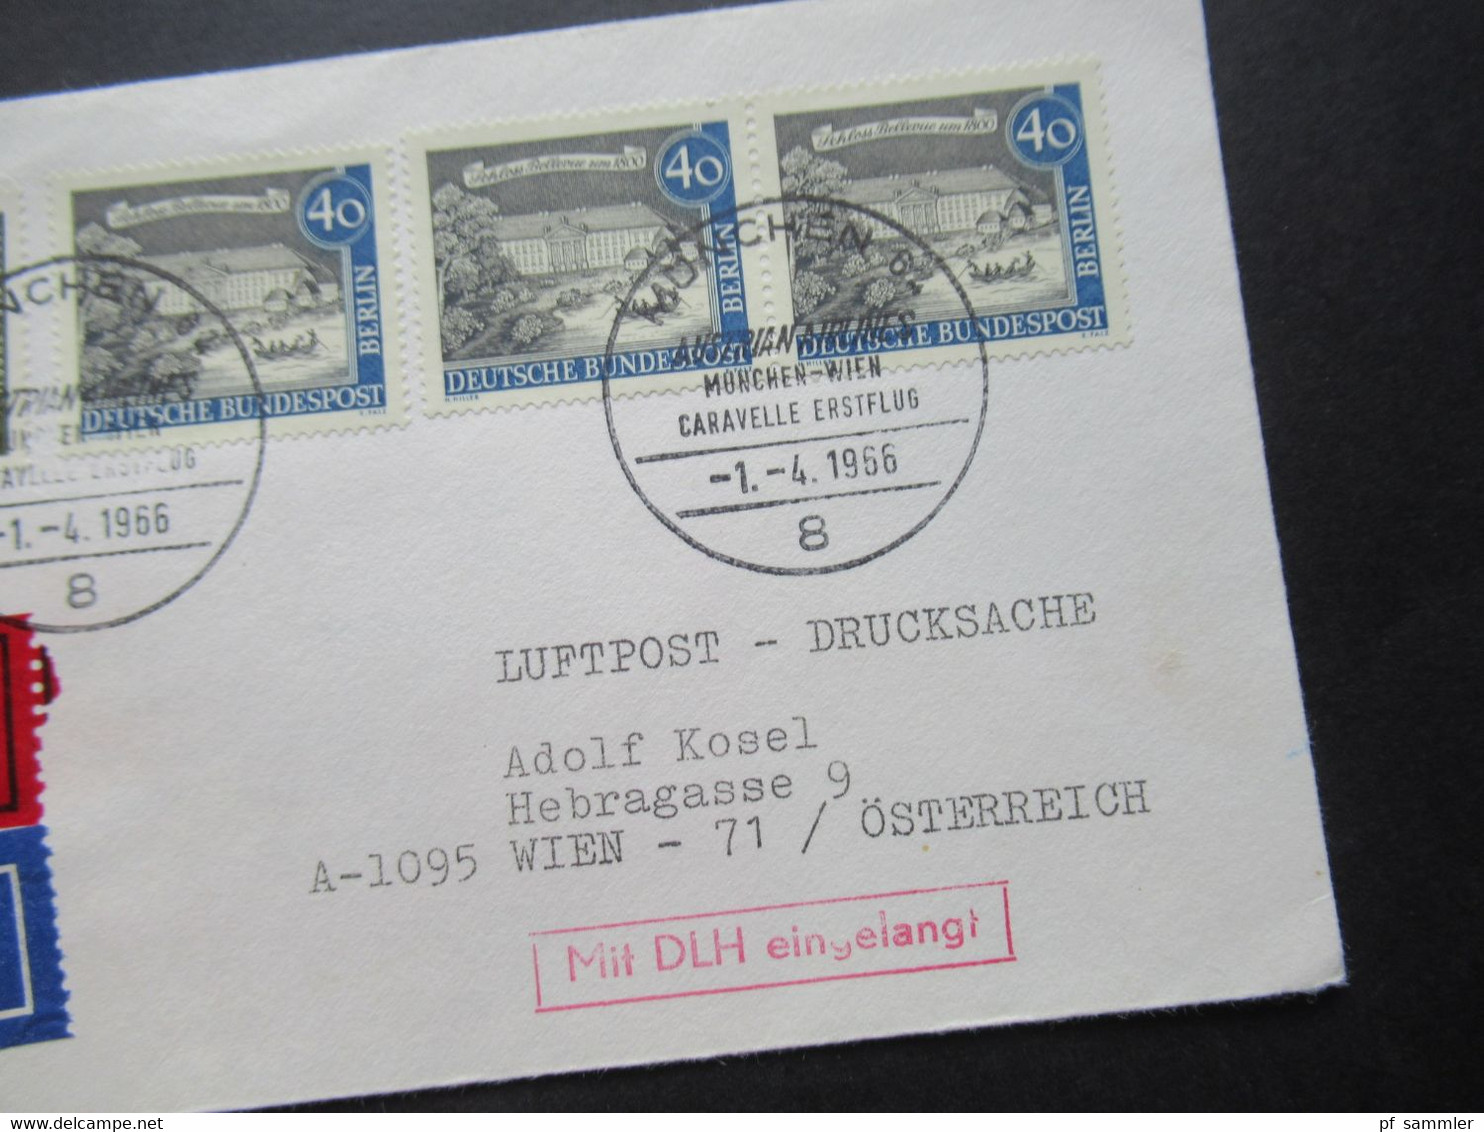 1966 Berlin (West) Alt Berlin Nr.220 MiF Mit Luftpost Eilzustellung Expres München - Wien / Stempel Mit DLH Eingelangt - Briefe U. Dokumente